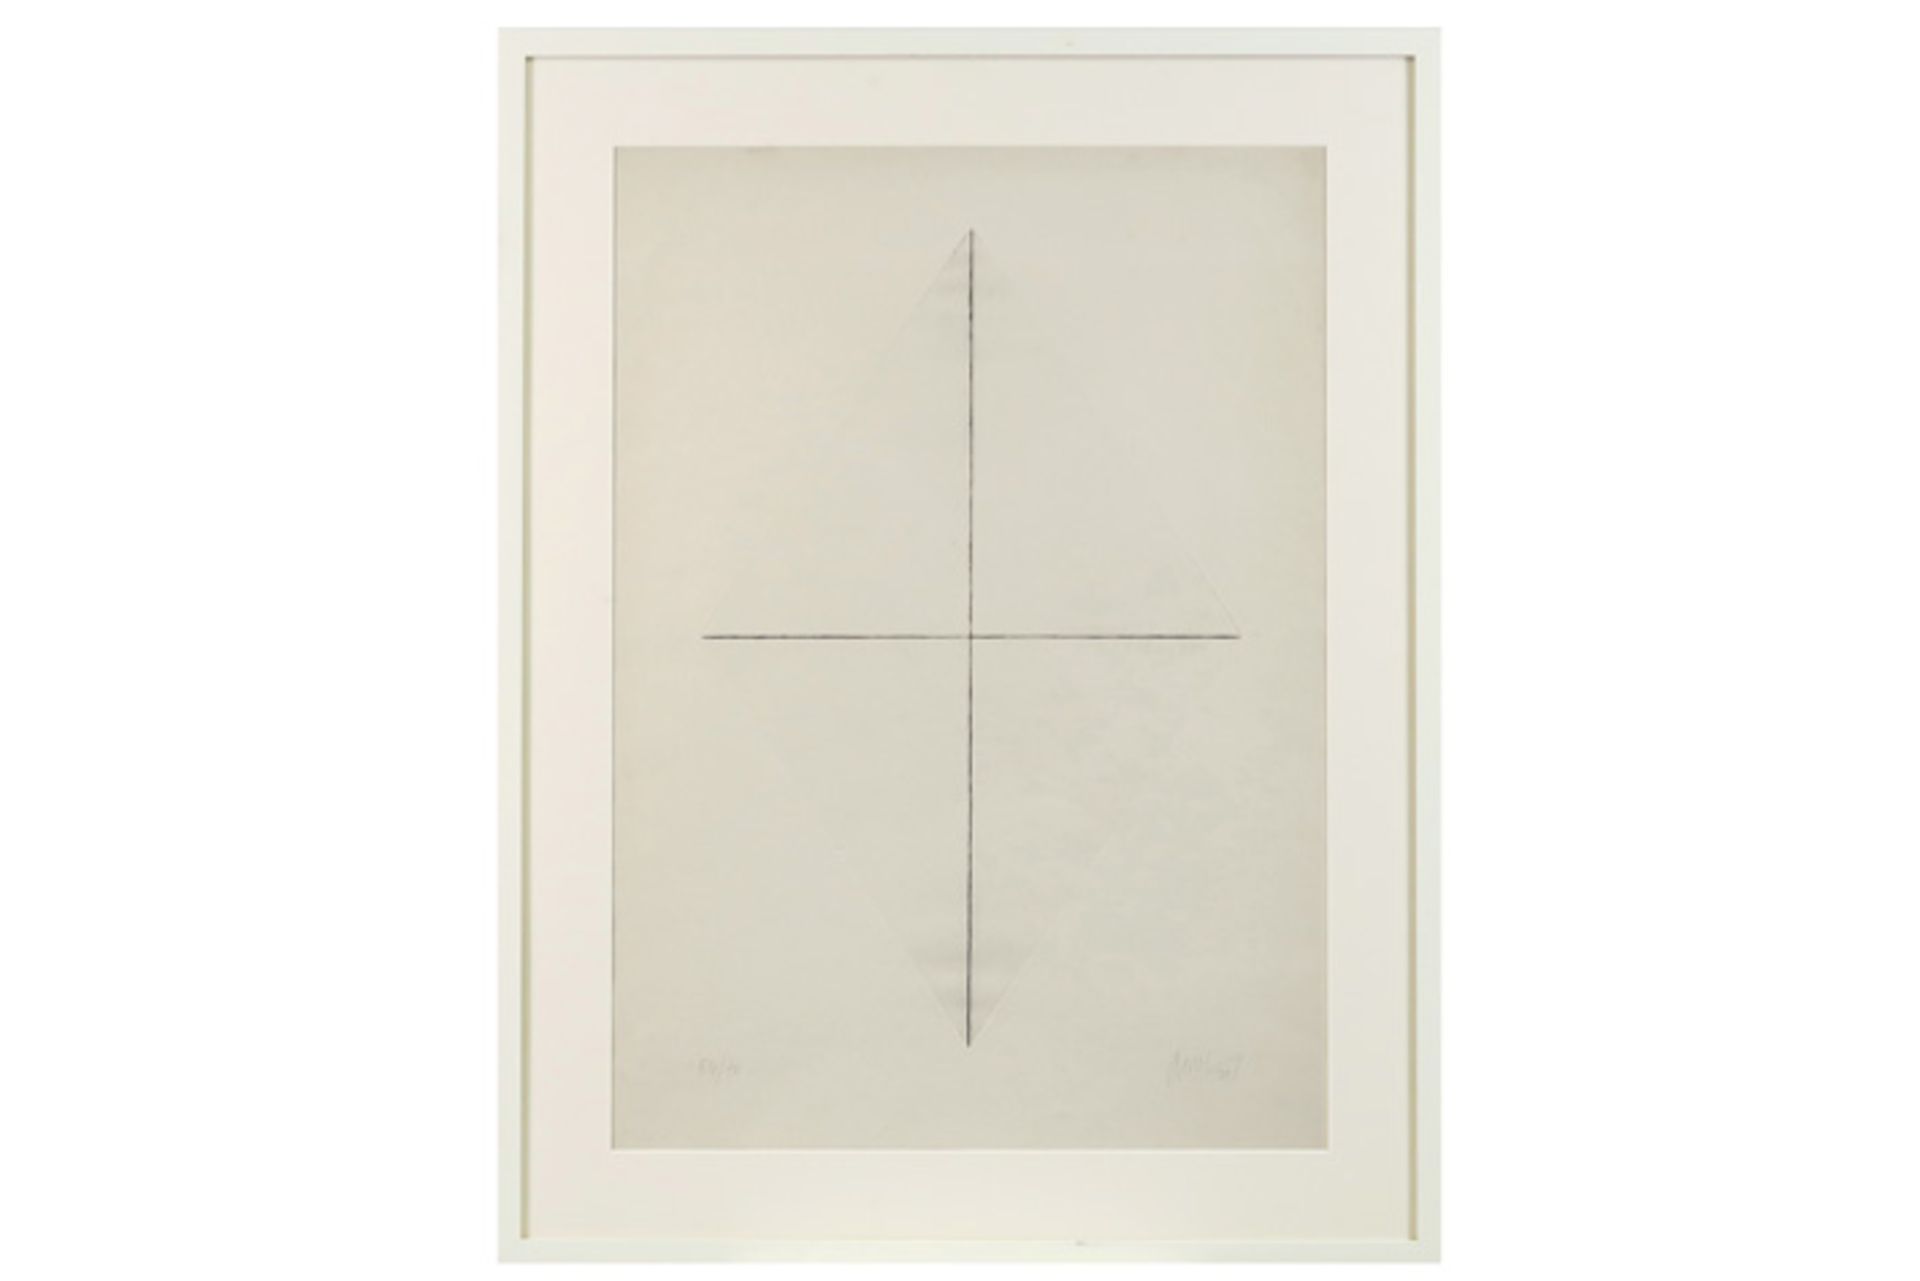 20th Cent. Belgian abstract etching - signed Dan Van Severen VAN SEVEREN DAN (1927 - 2009) ets n°